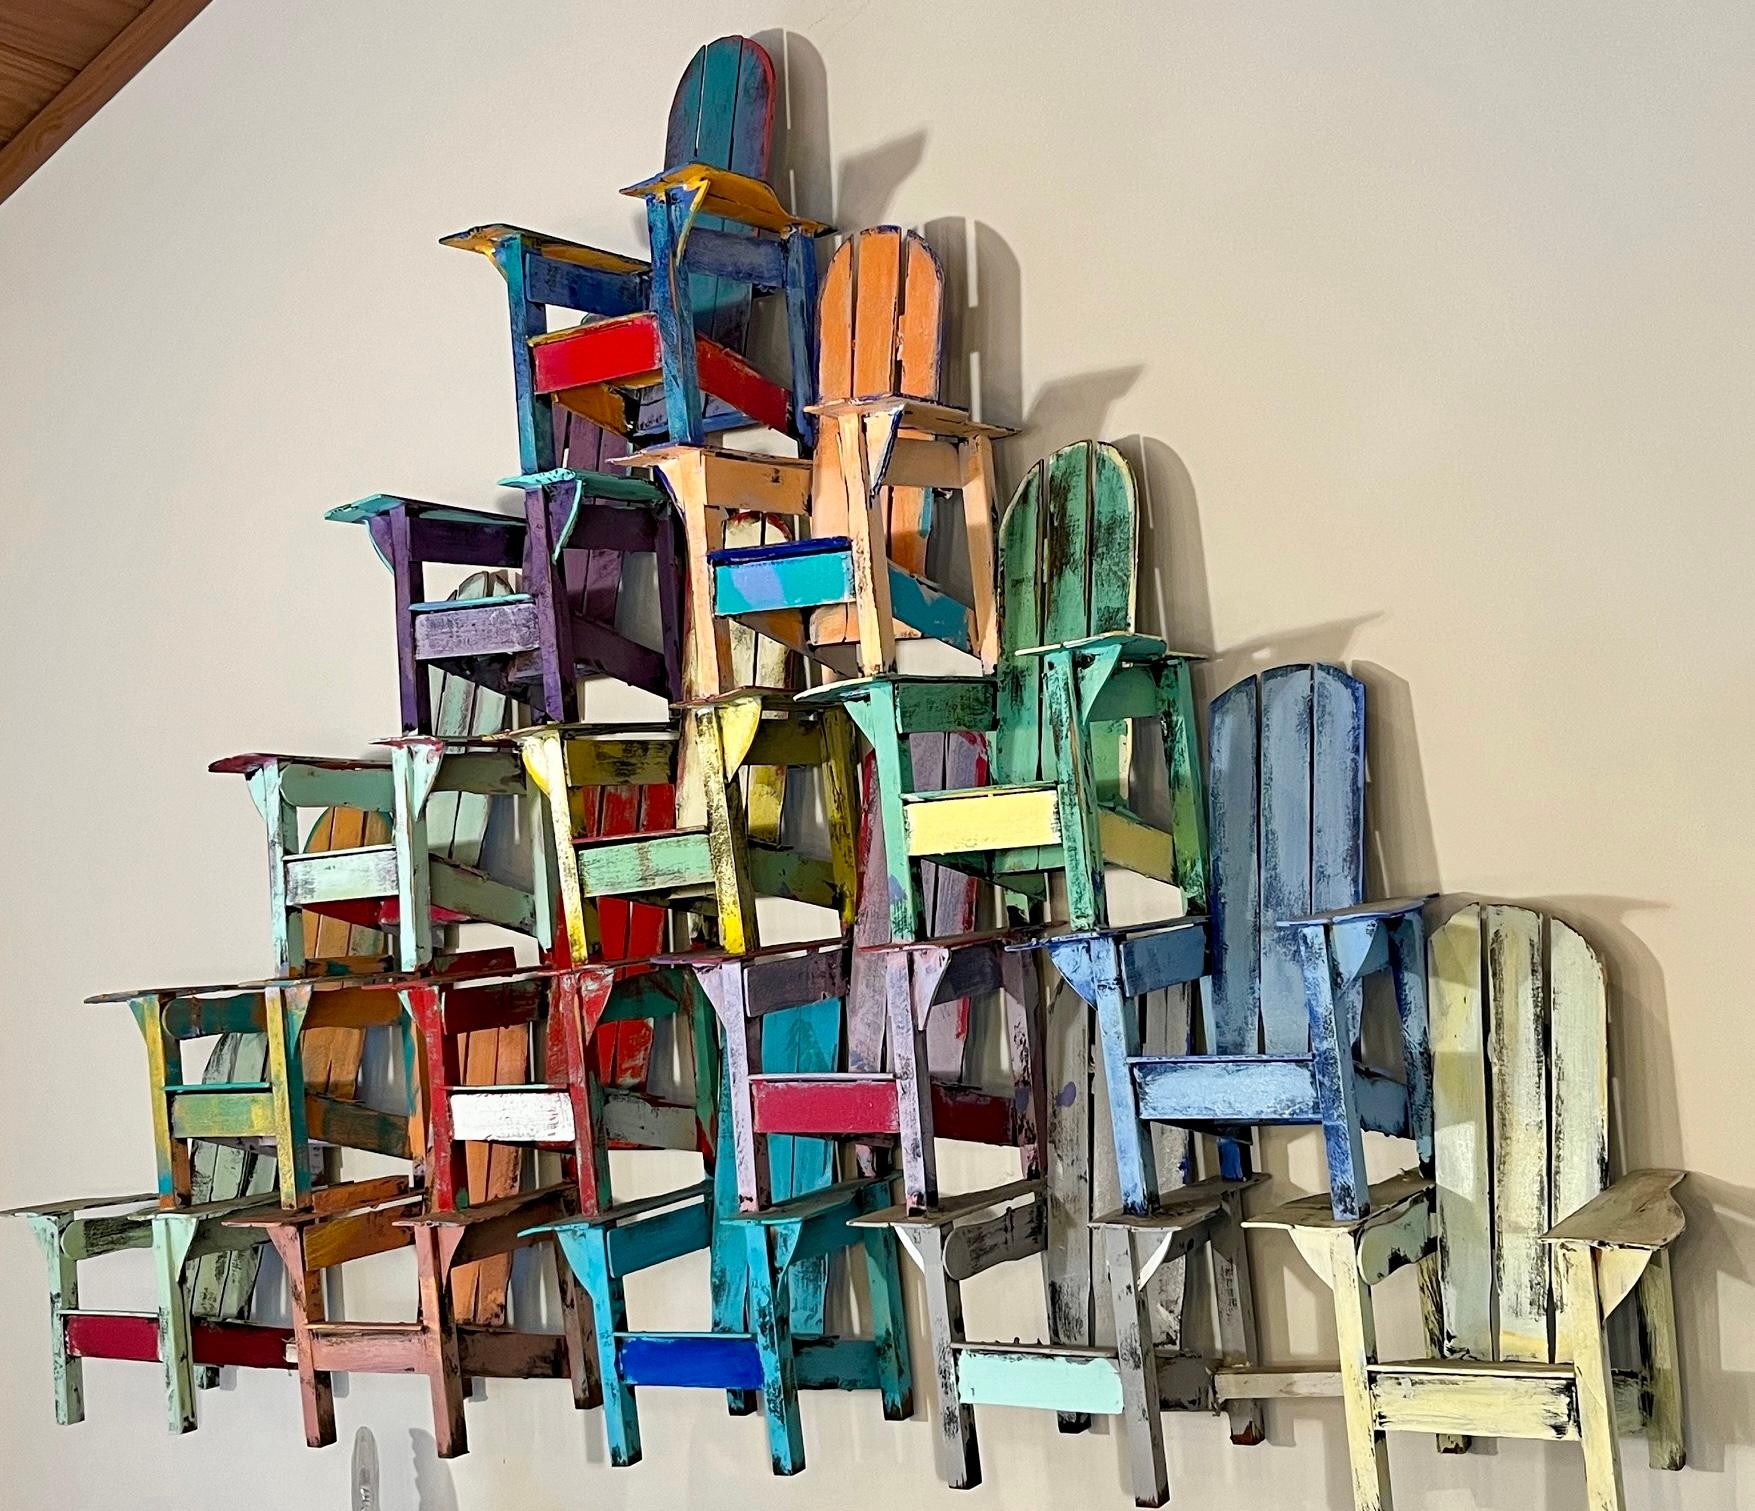 Un modèle coloré en bois peint en trois dimensions de chaises Adirondack empilées.  Ces sculptures murales de Paul Jacobsen sont des sujets de conversation instantanés.  

Paul Jacobsen a utilisé des objets du quotidien, tels que des chaises, des